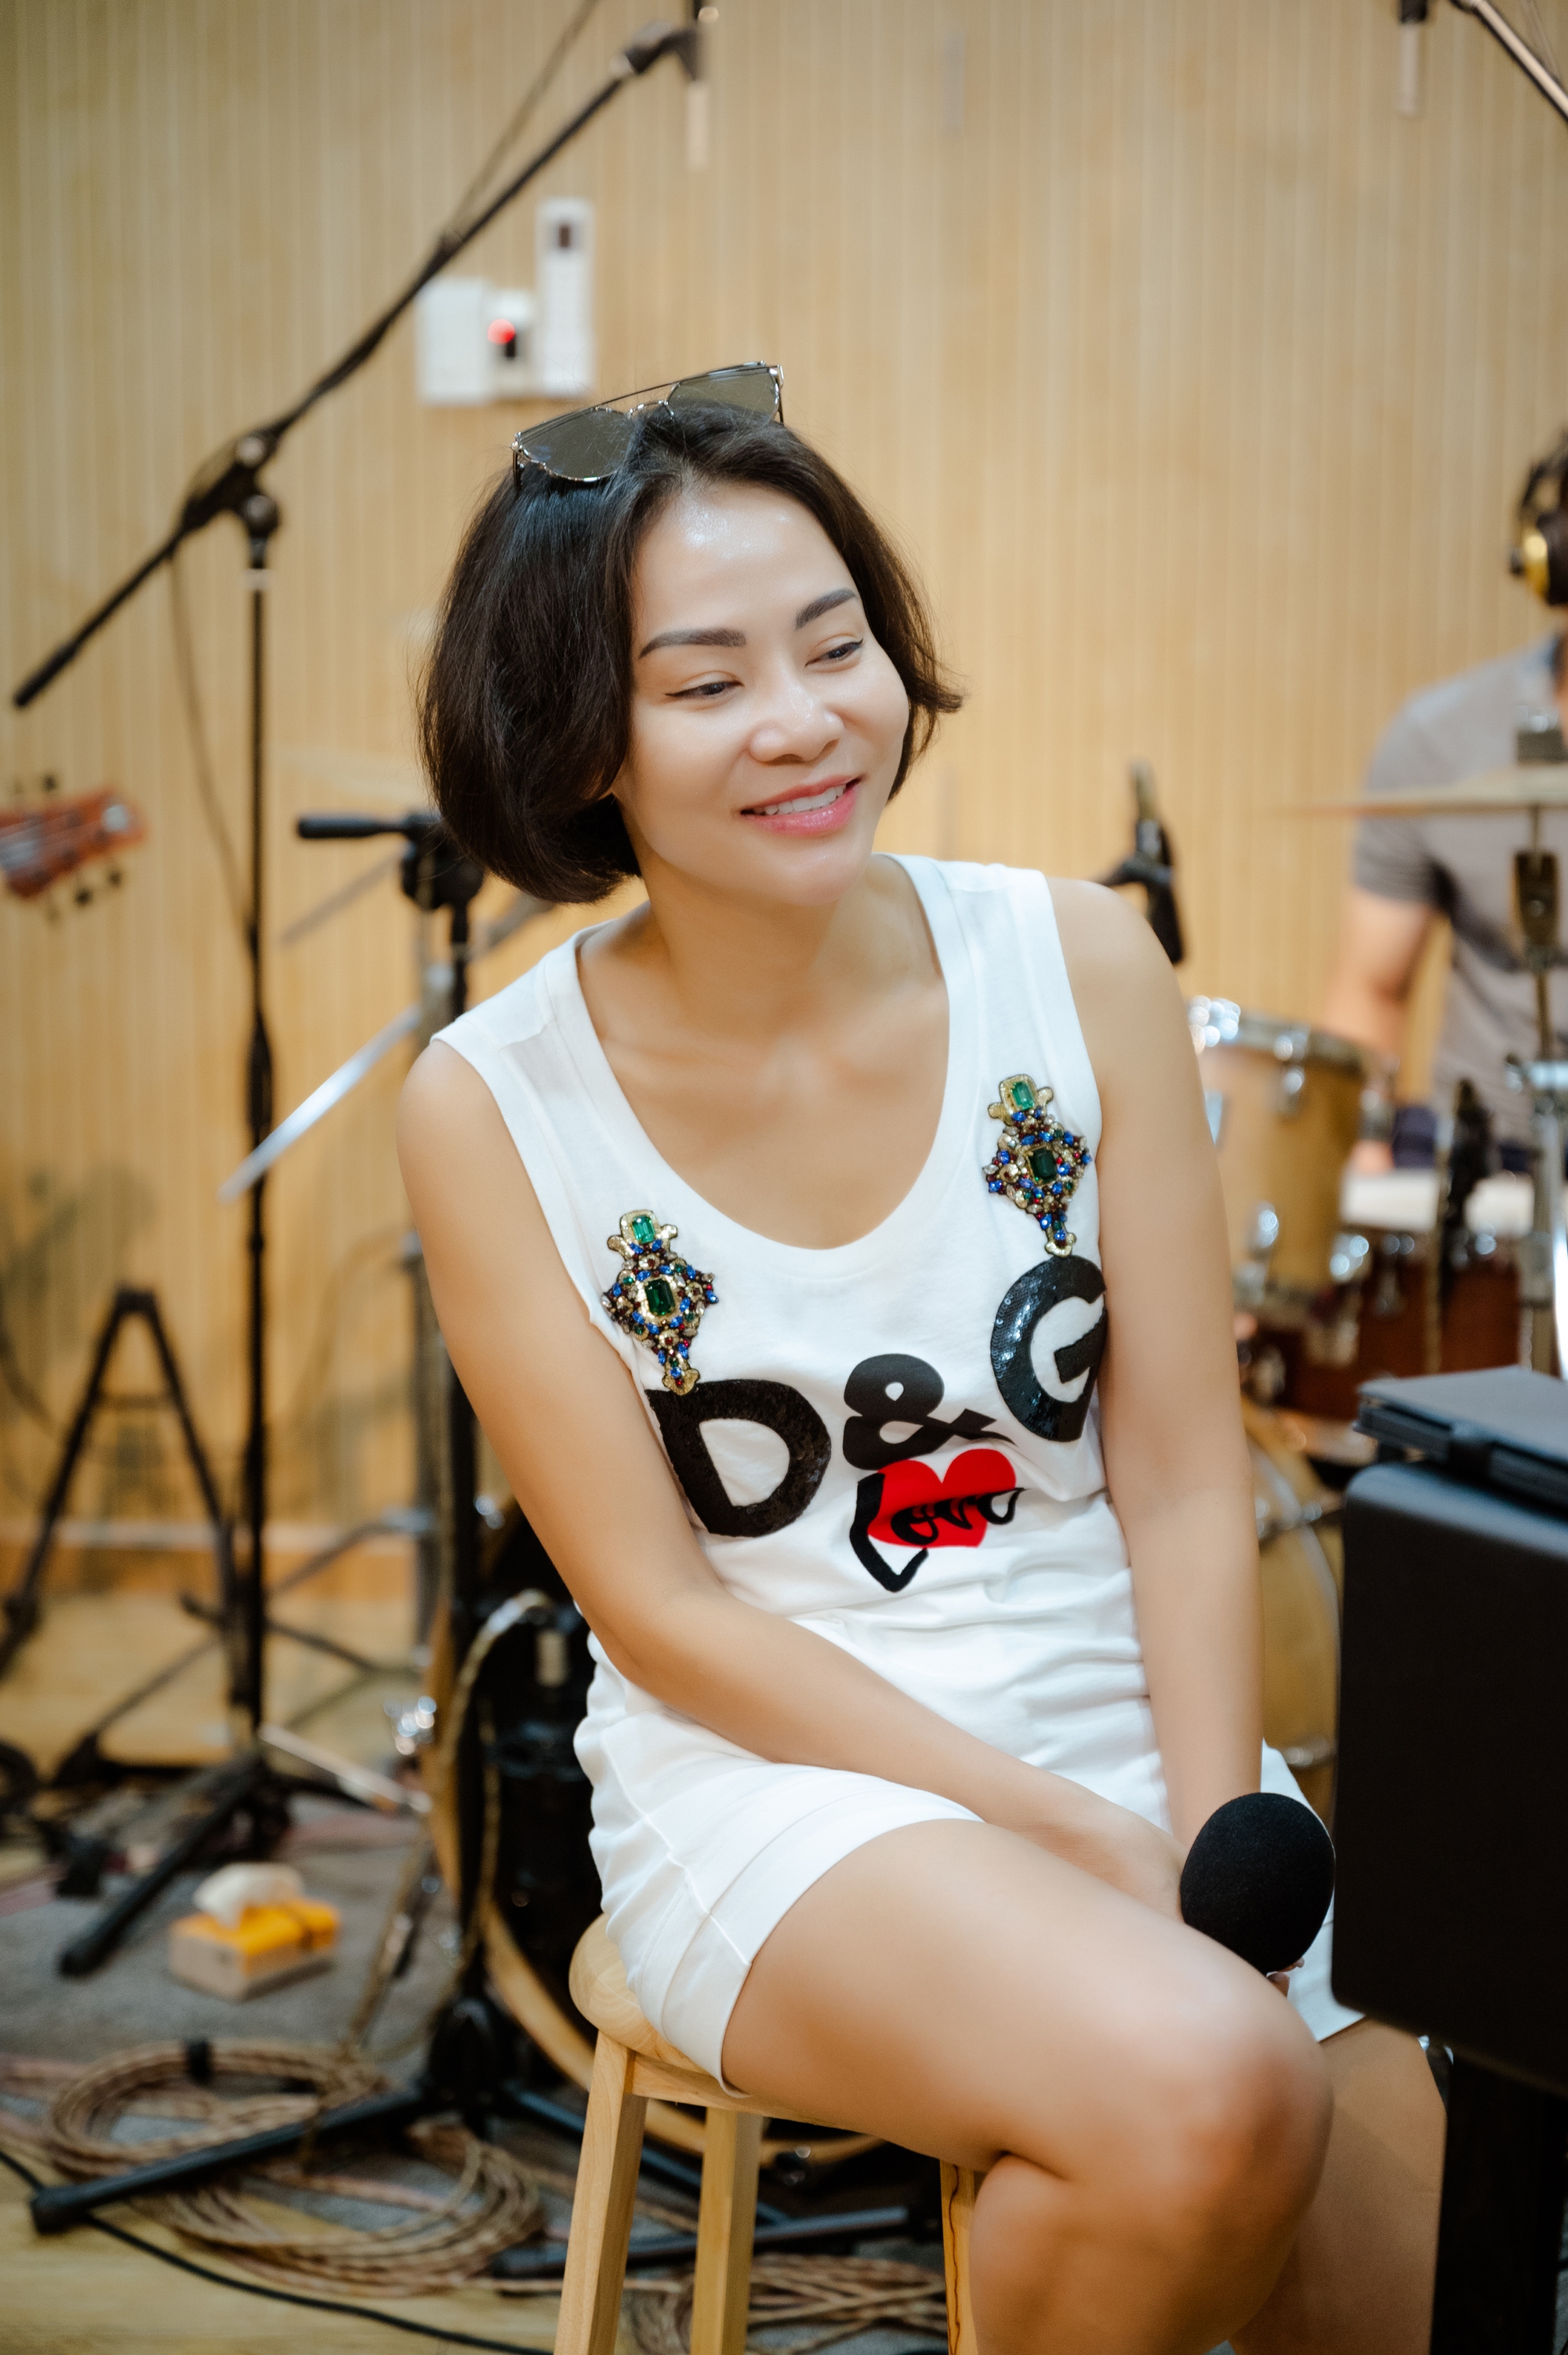 Singer Thu Minh: 